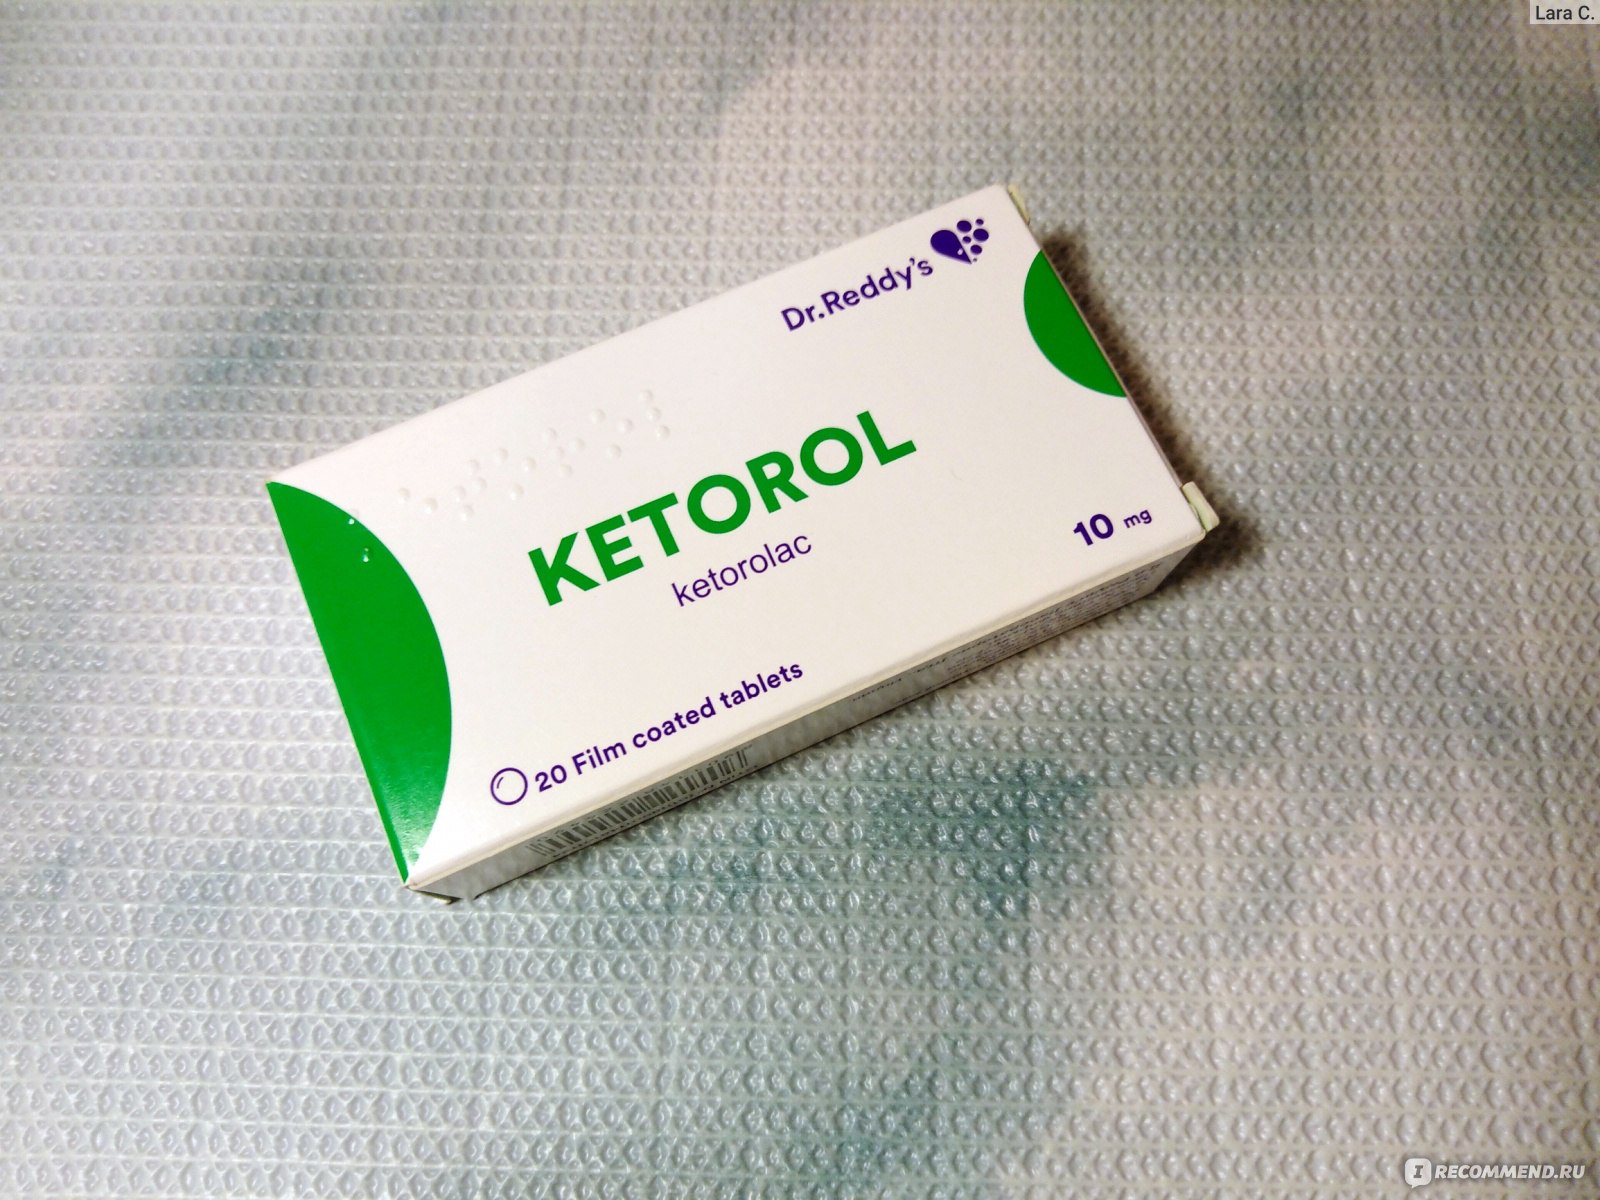 Обезболить сильнее кеторола. Обезболивающее кеторол. Кеторол таблетки. Кеторол Dr.Reddy's. Сильное обезболивающее кеторол.